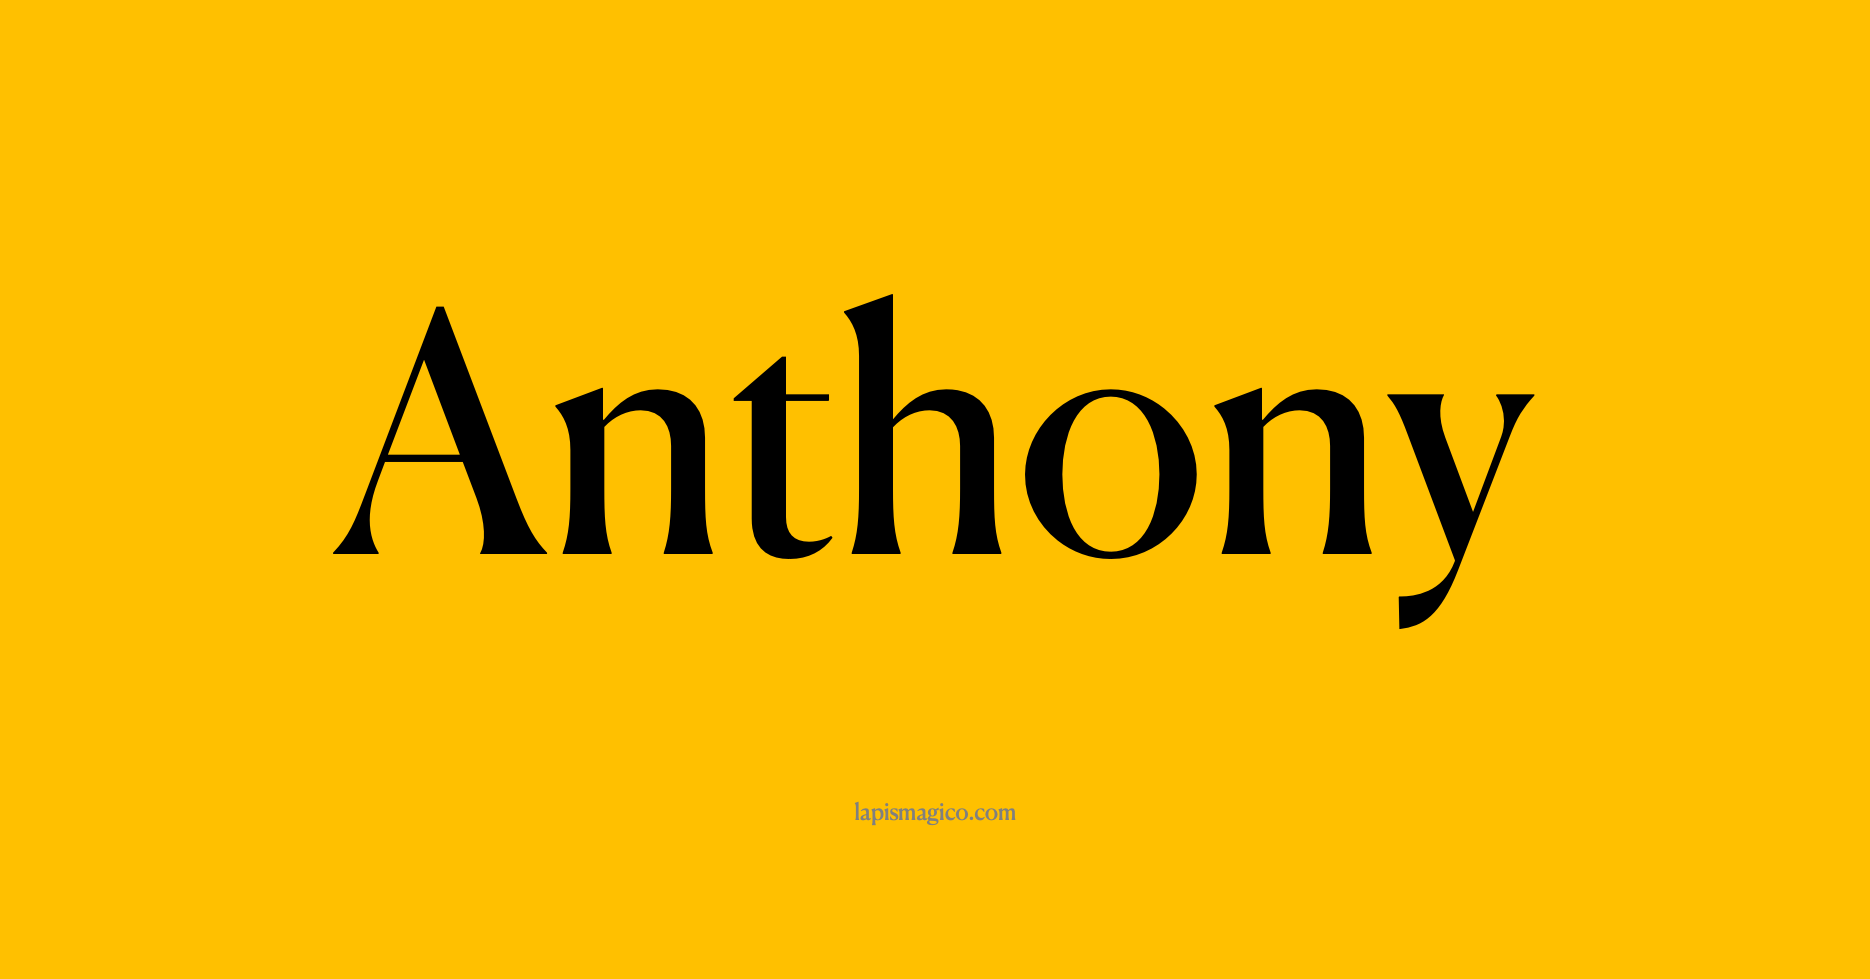 Nome Anthony